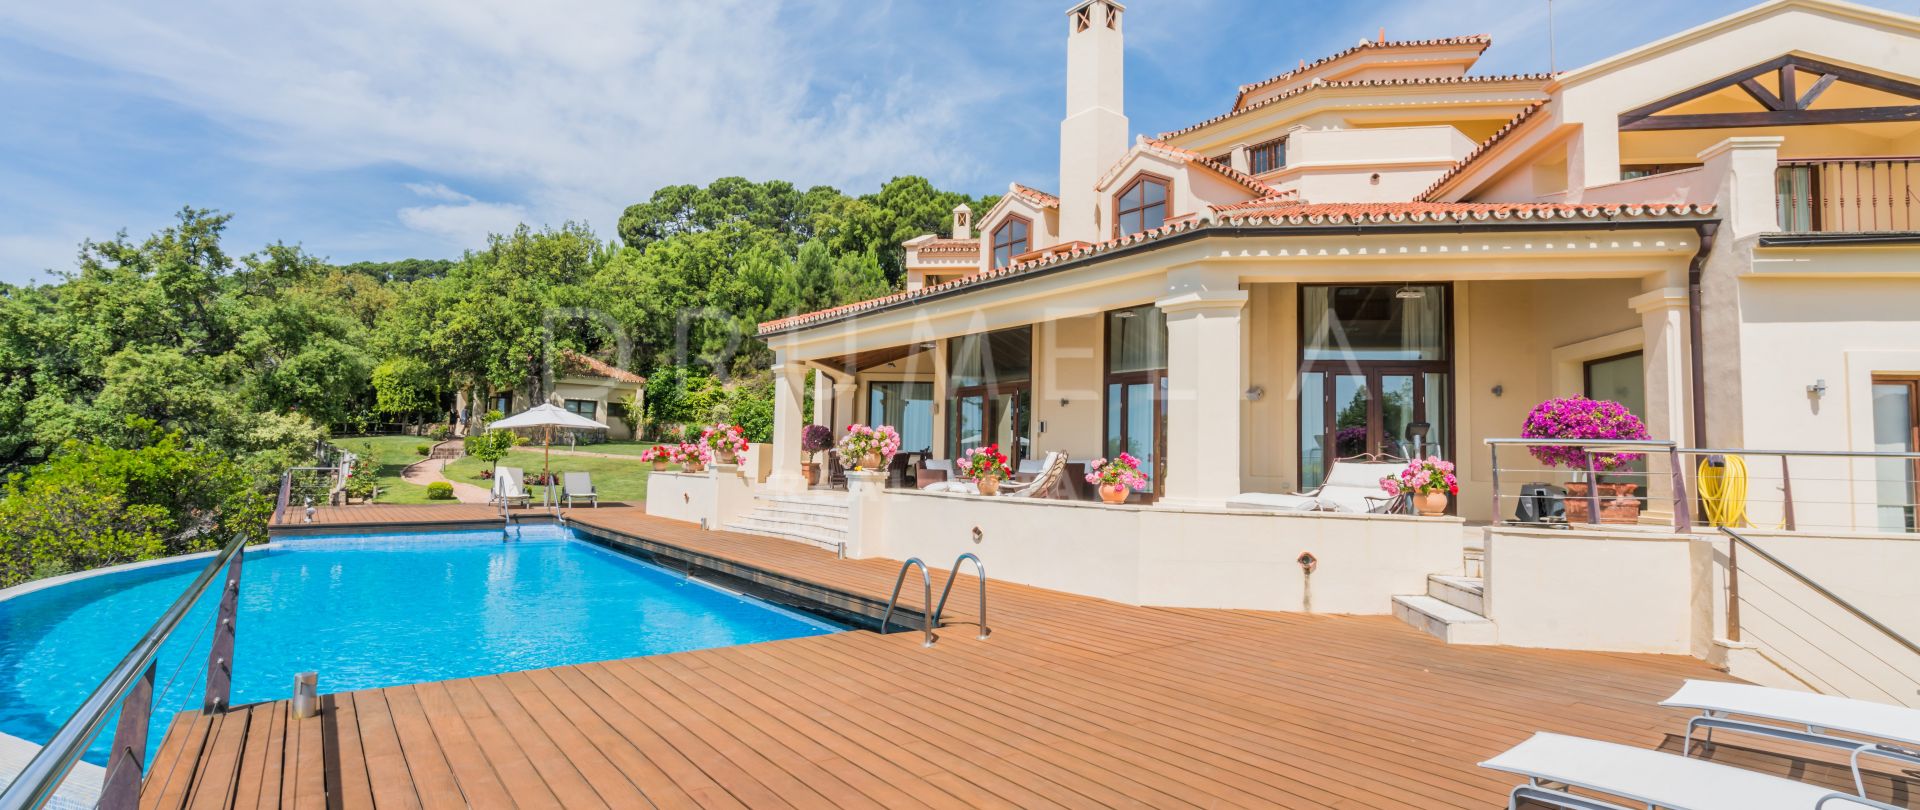 Bezaubernde mediterrane Luxus-Villa in Zagaleta